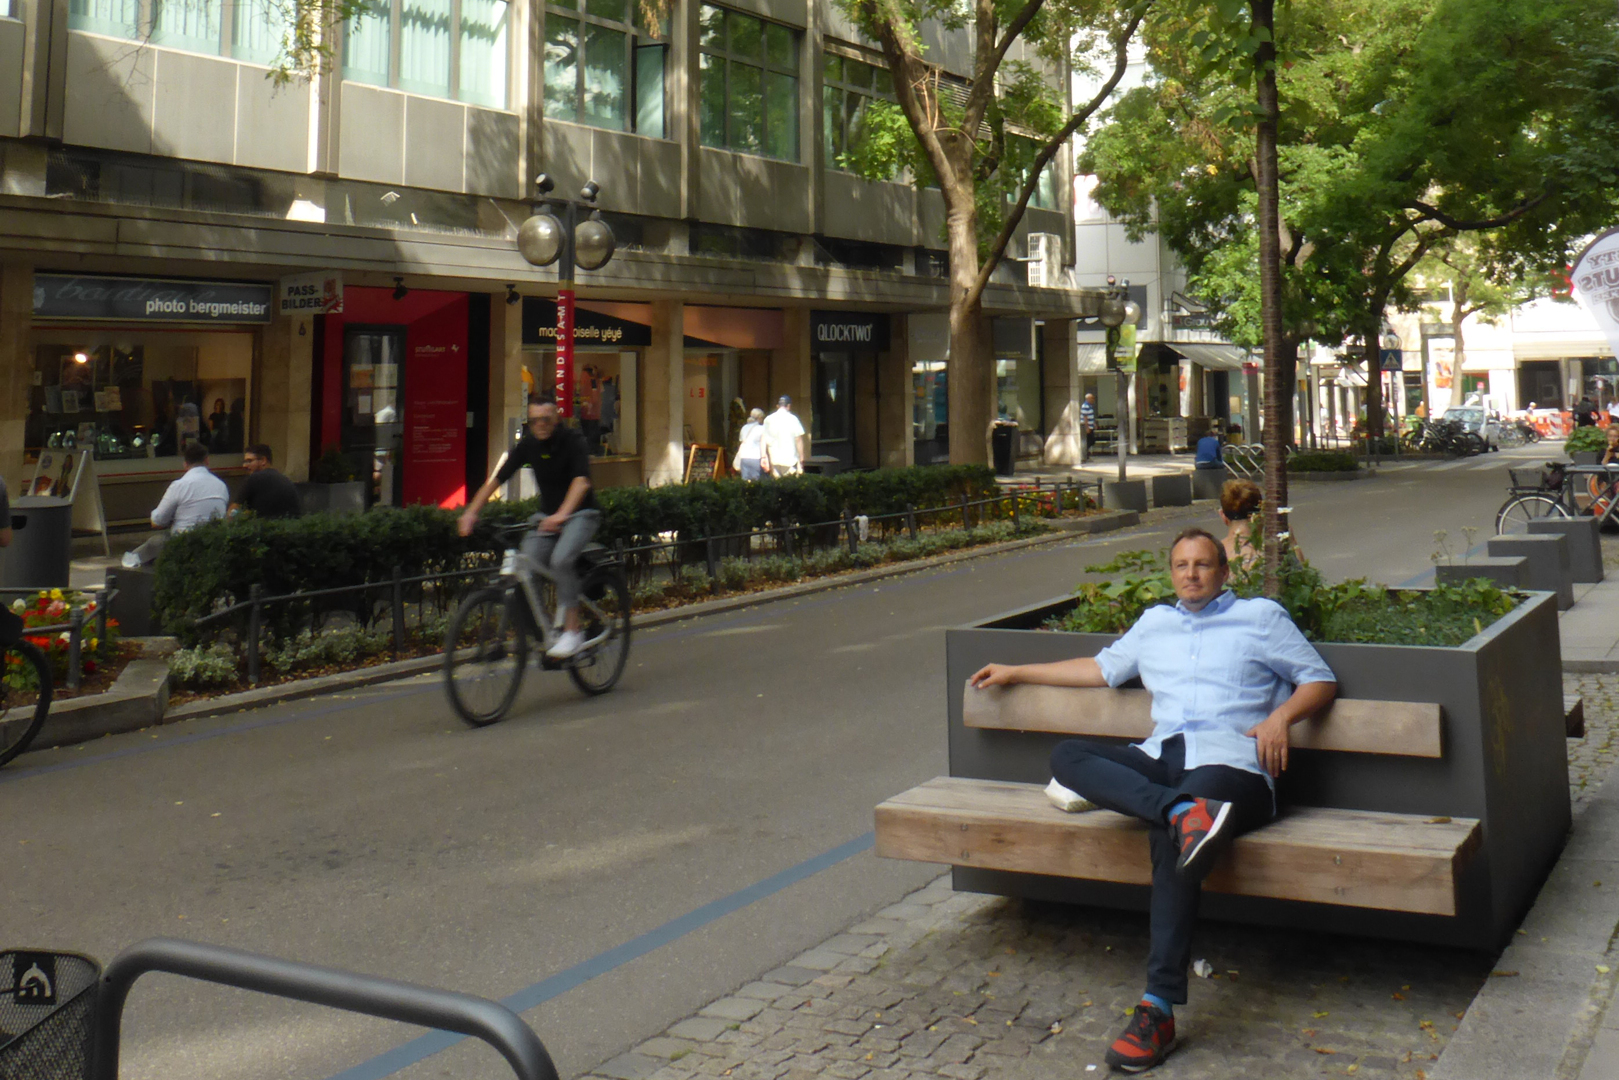 Blick in die Eberhardstraße. Eine Person sitzt auf einer Bank an einem Pflanzenkübel. Foto: Stadt Stuttgart